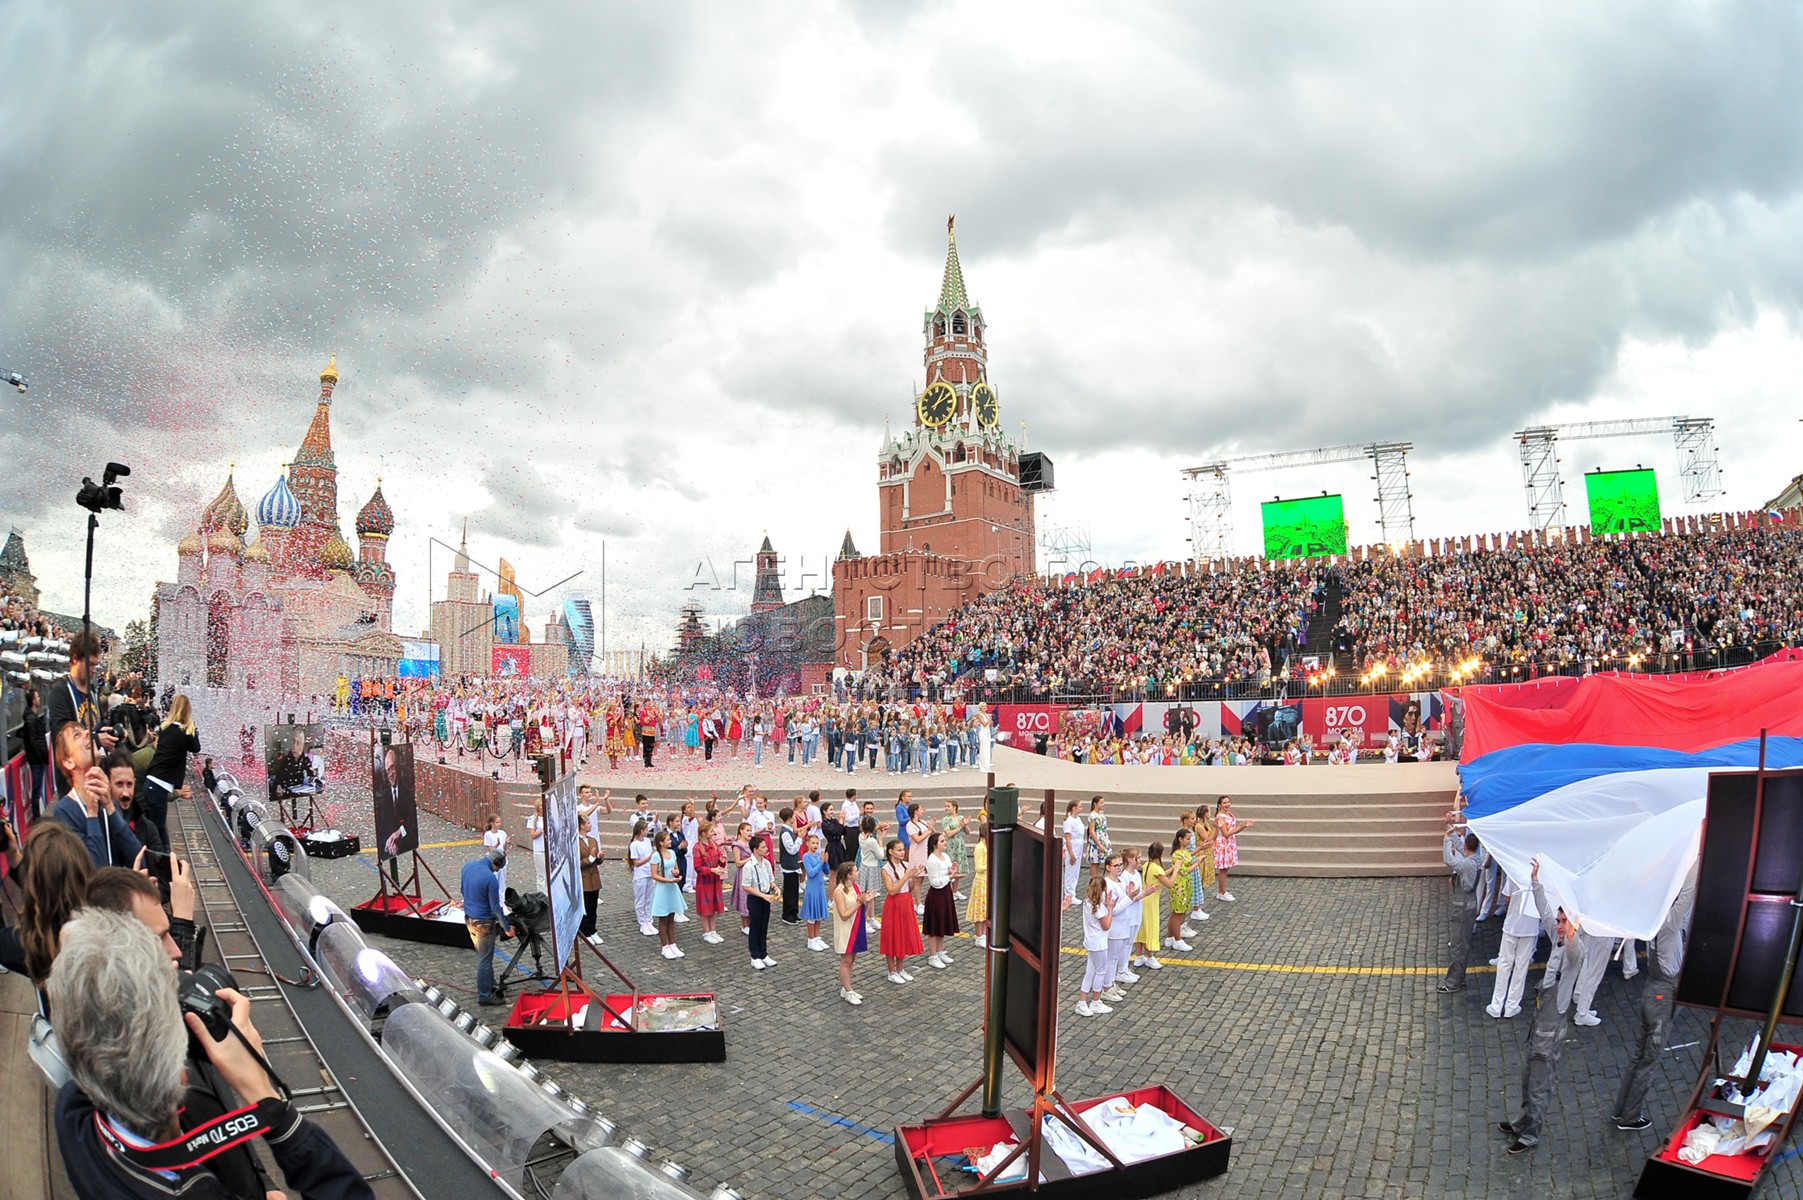 Сегодня на красной площади мероприятия в москве. Красная площадь праздник. Красная площадь сейчас праздник. Мероприятия в Москве сегодня на красной площади. Город Москва 2017.